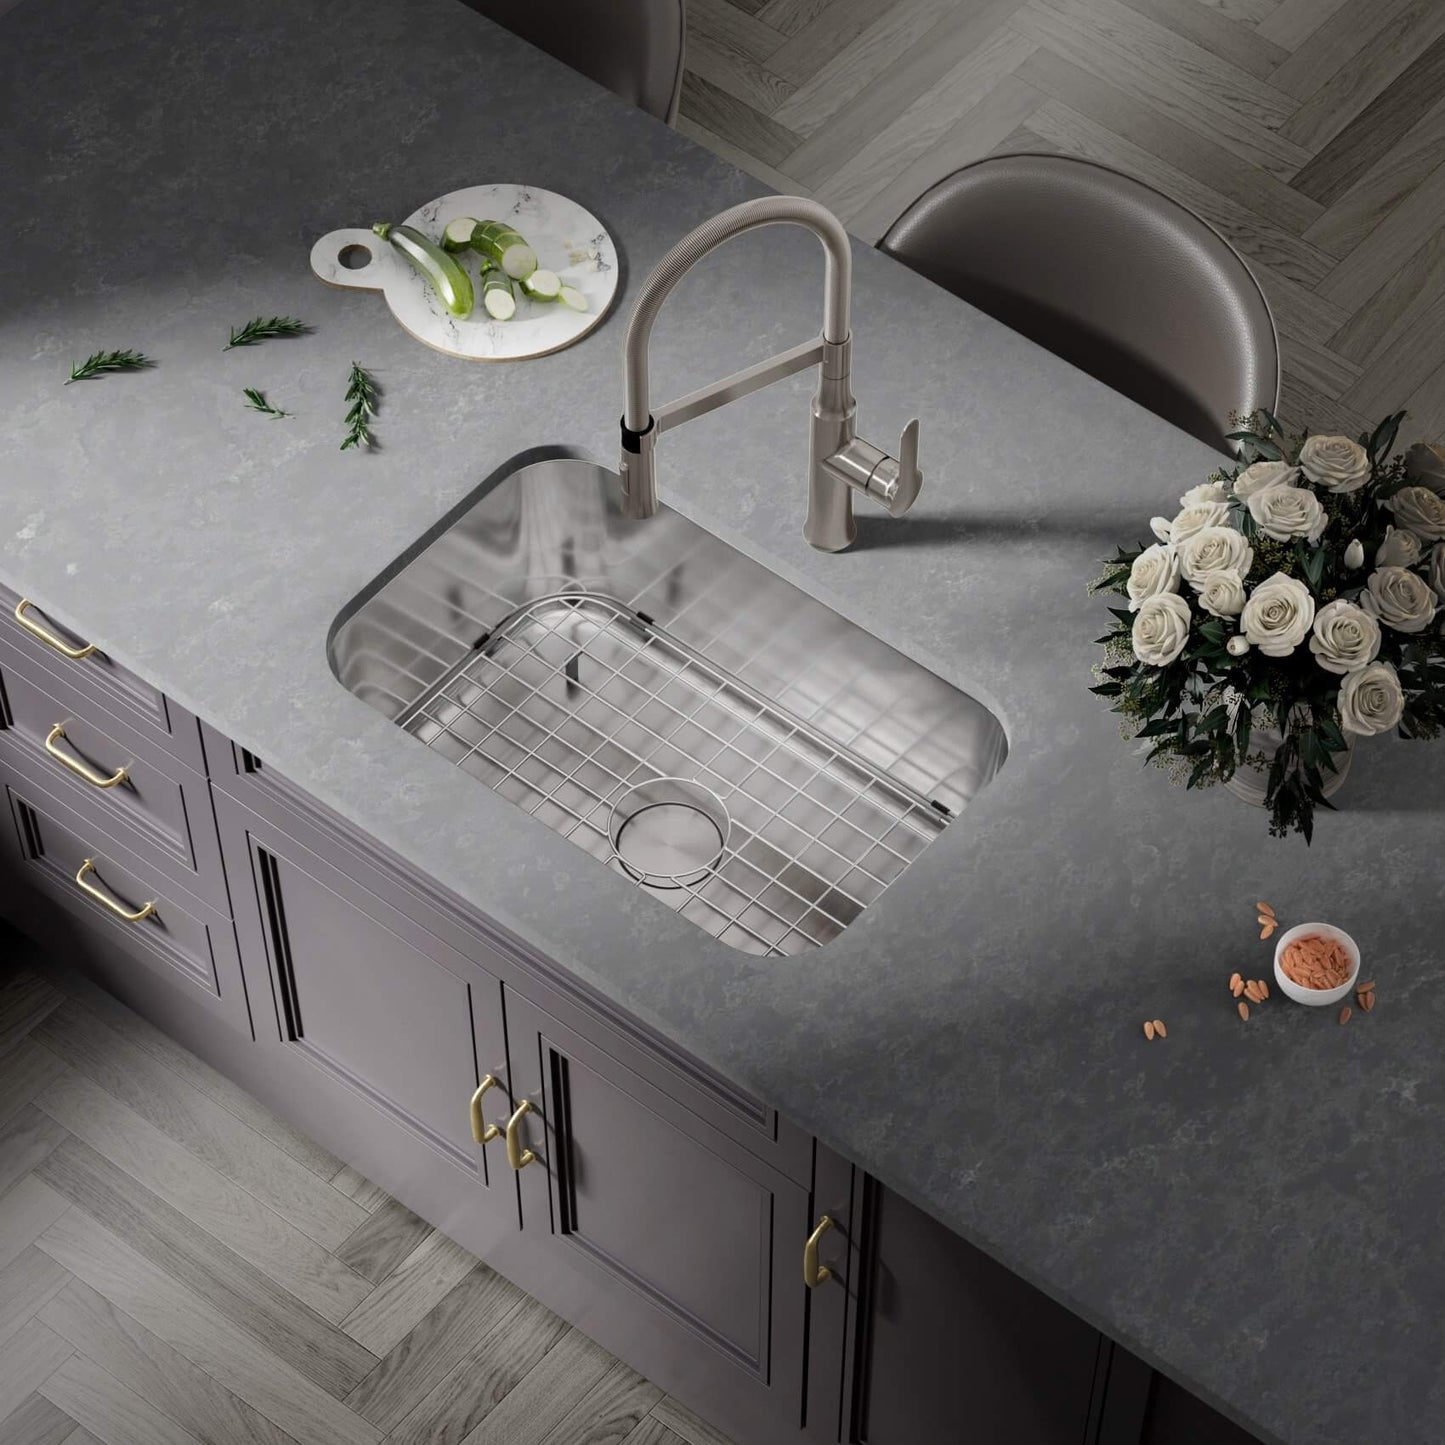 KSN-3018-7-S Undermount Single Bowl Kitchen Sink